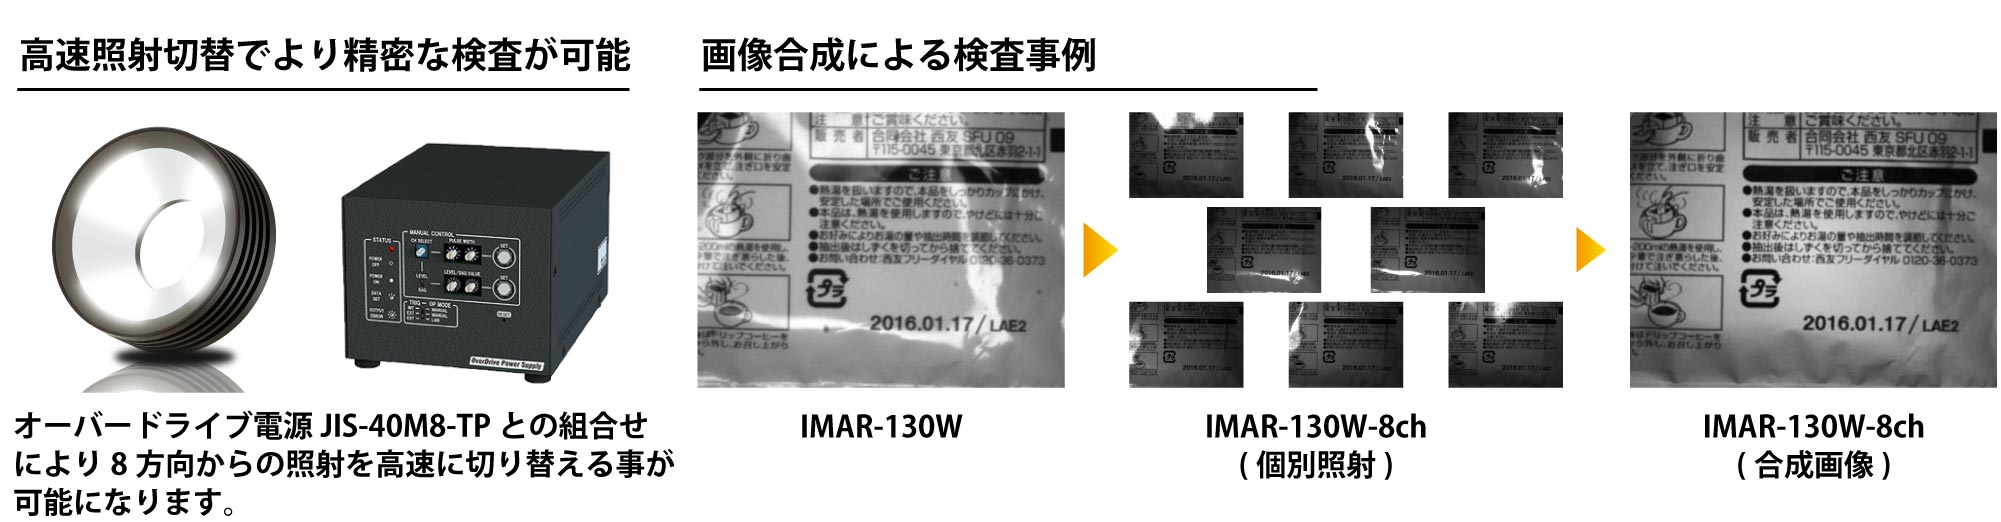 IMAR-8CH Product Description 04